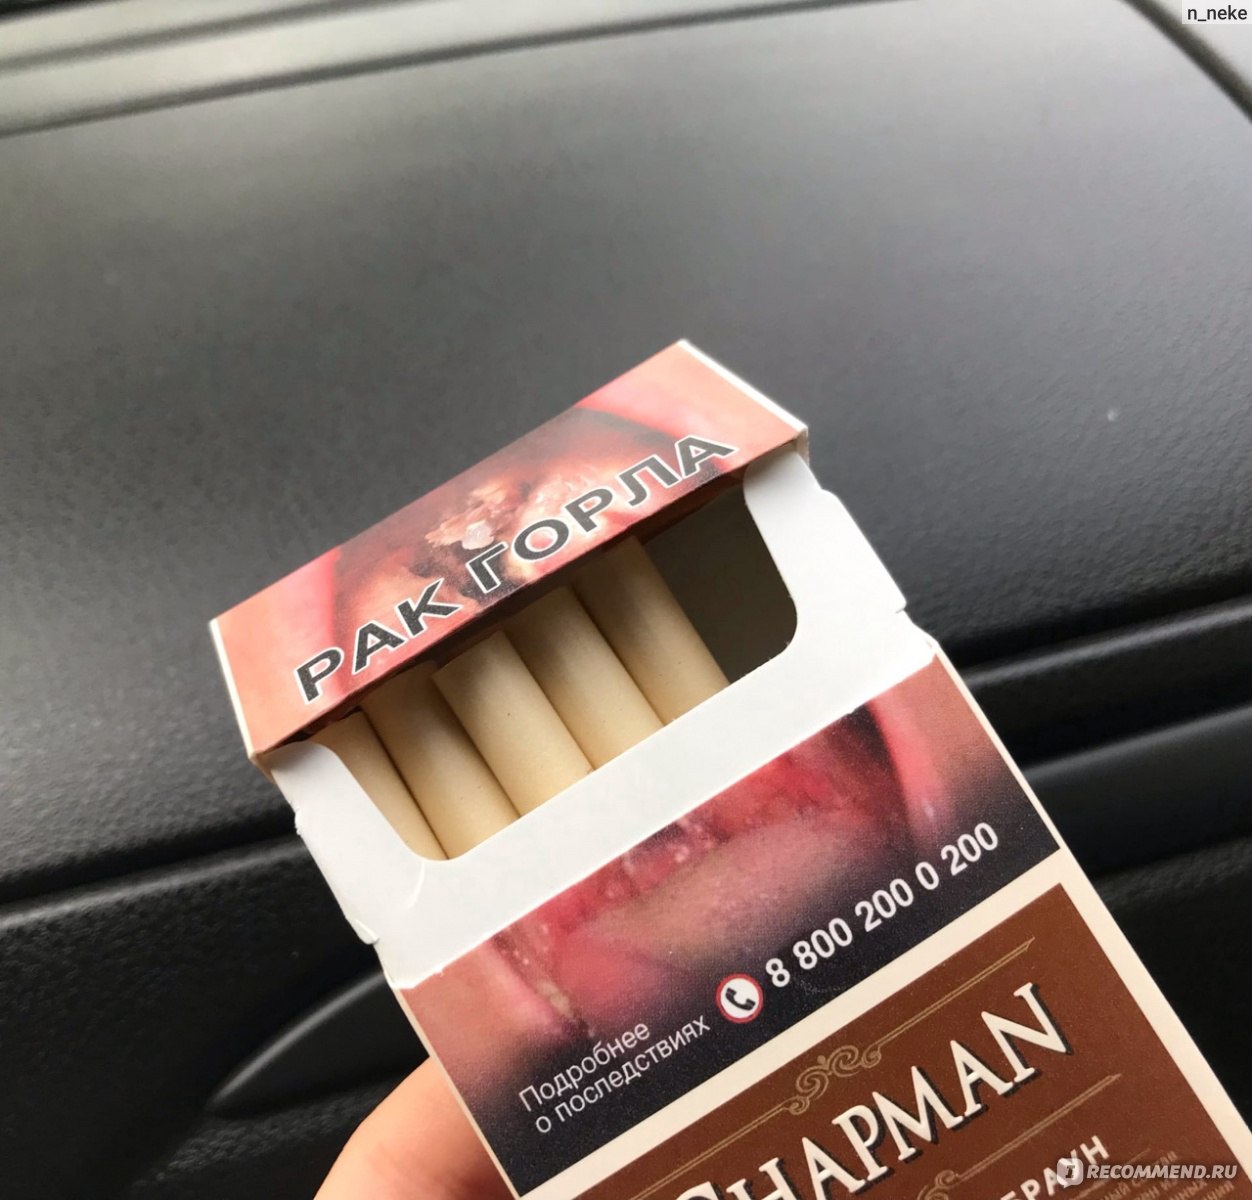 Сигареты Chapman Brown фото